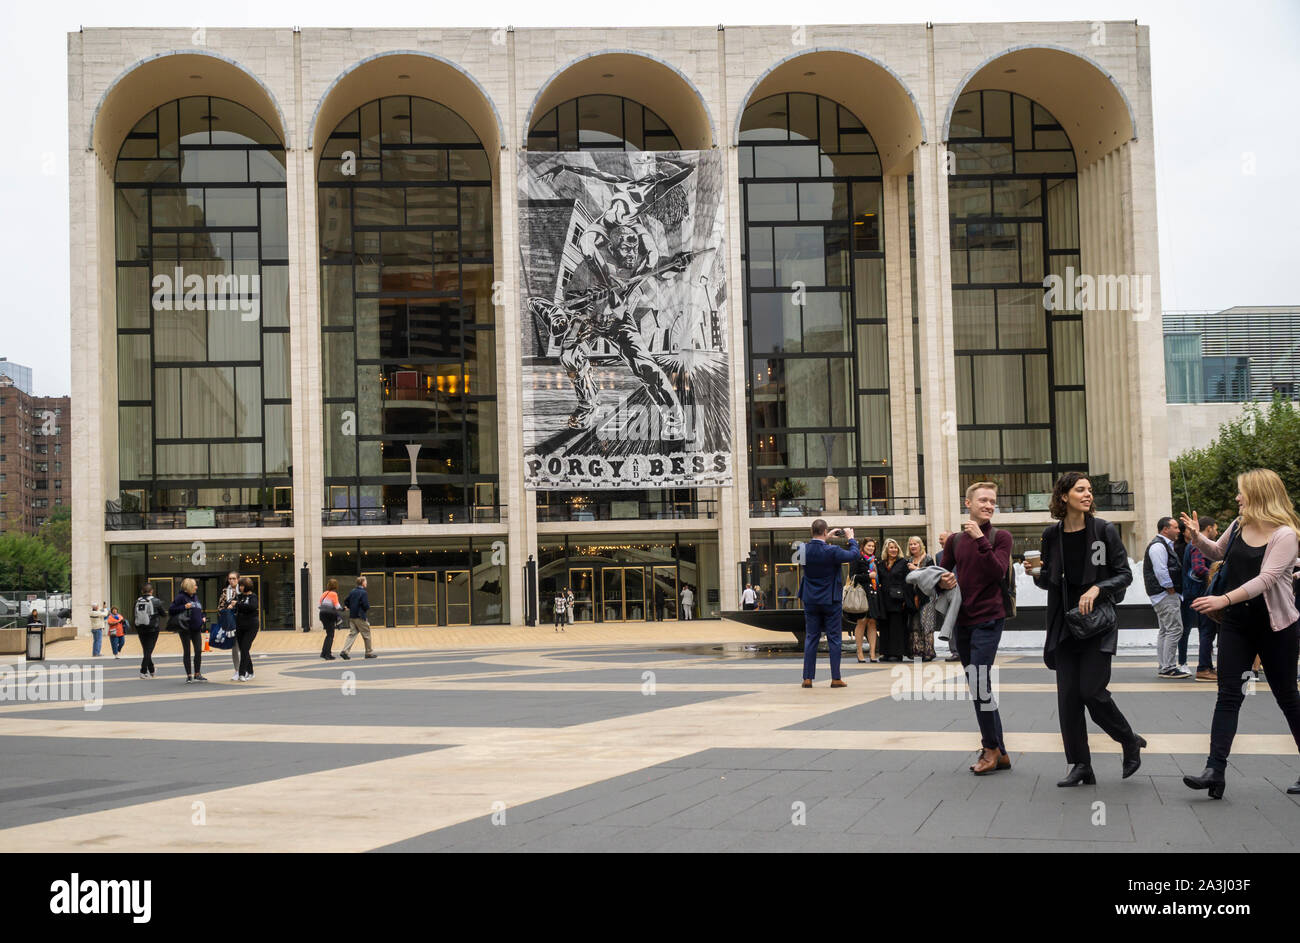 Le Metropolitan Opera House du Lincoln Center de New York affiche une bannière pour la production courante de "Porgy and Bess" le dimanche, Octobre 6, 2019. (© Richard B. Levine) Banque D'Images